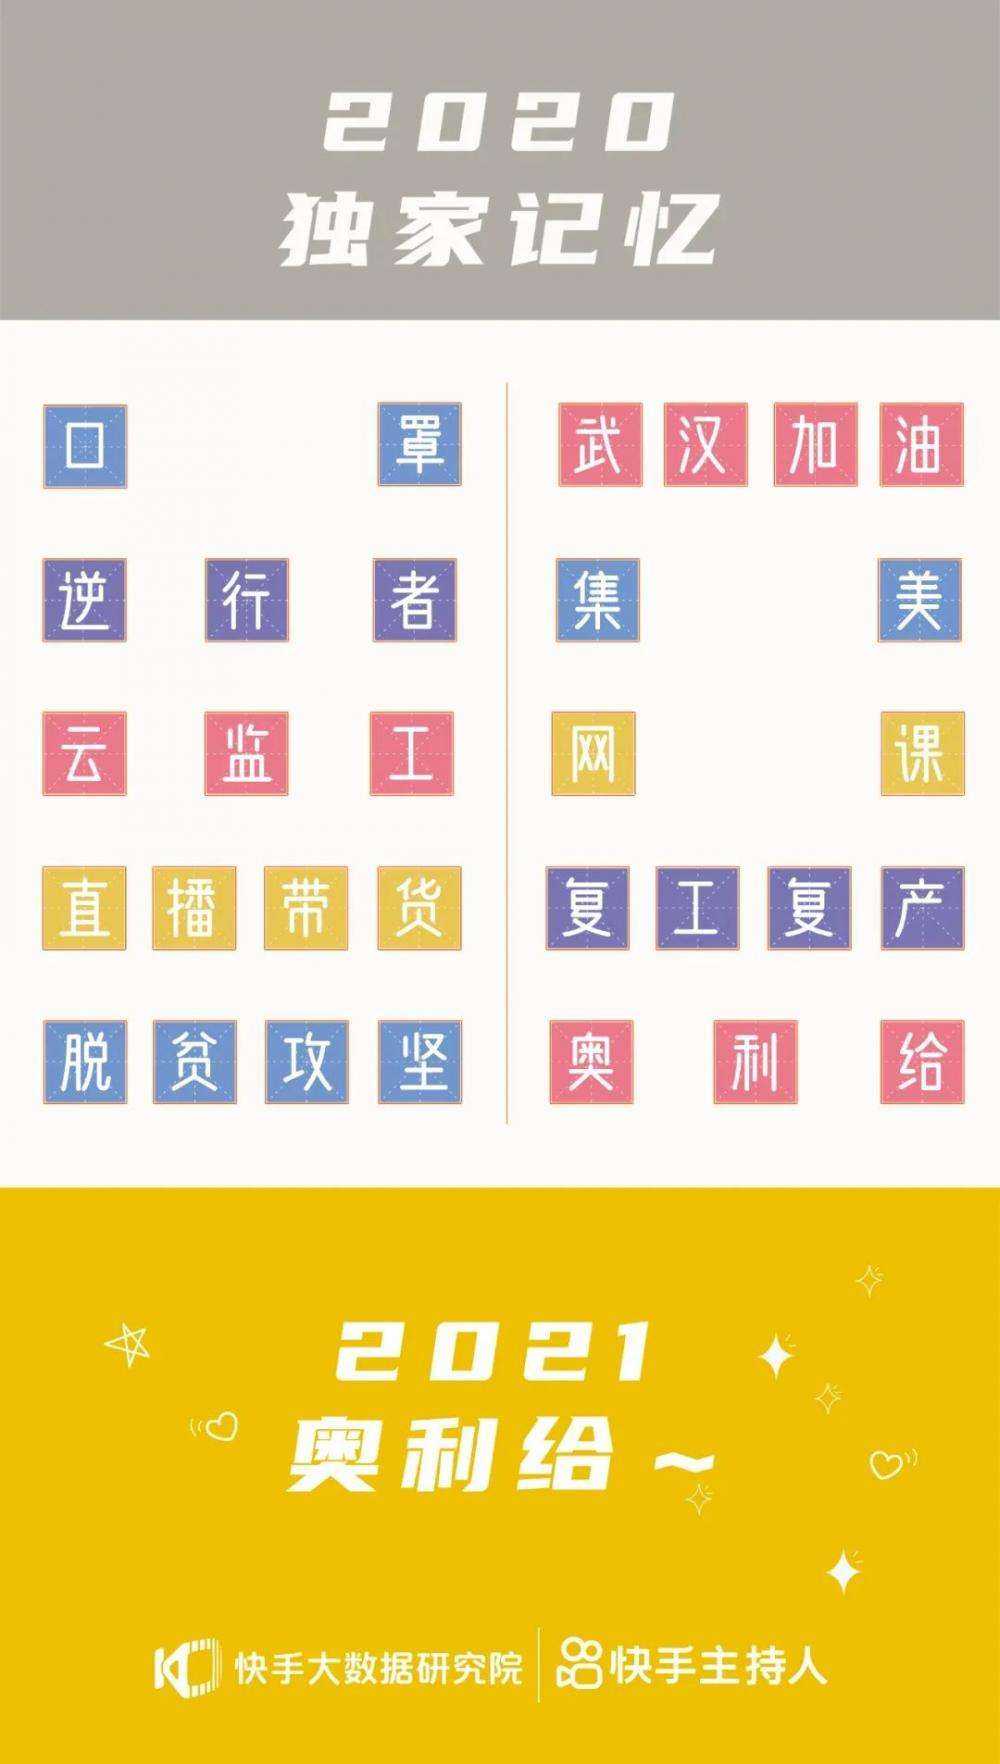 2020快手年度热词发布，“<a href='https://www.zhouxiaohui.cn/duanshipin/
' target='_blank'>直播带货</a>”“奥利给”“集美”等入选-第12张图片-周小辉博客